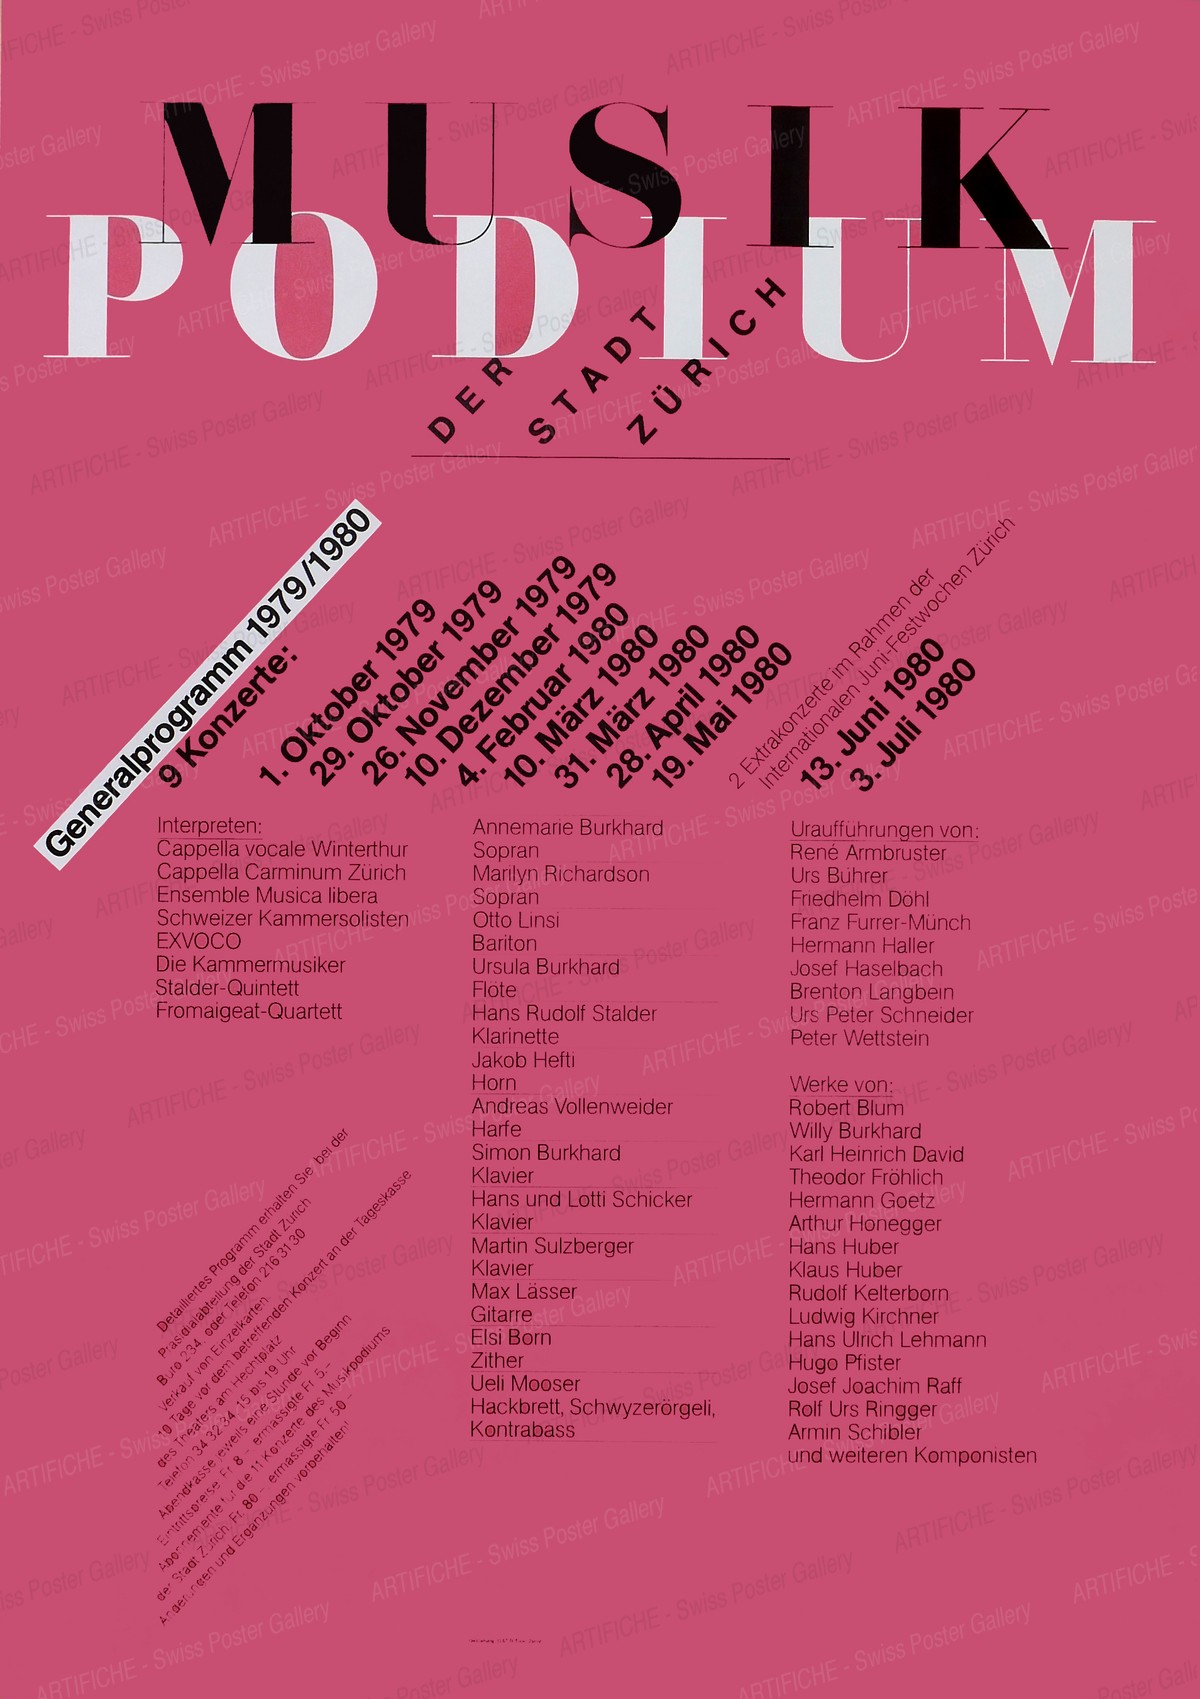 Music Podium Zurich, Odermatt, Siegfried / Tissi, Rosmarie